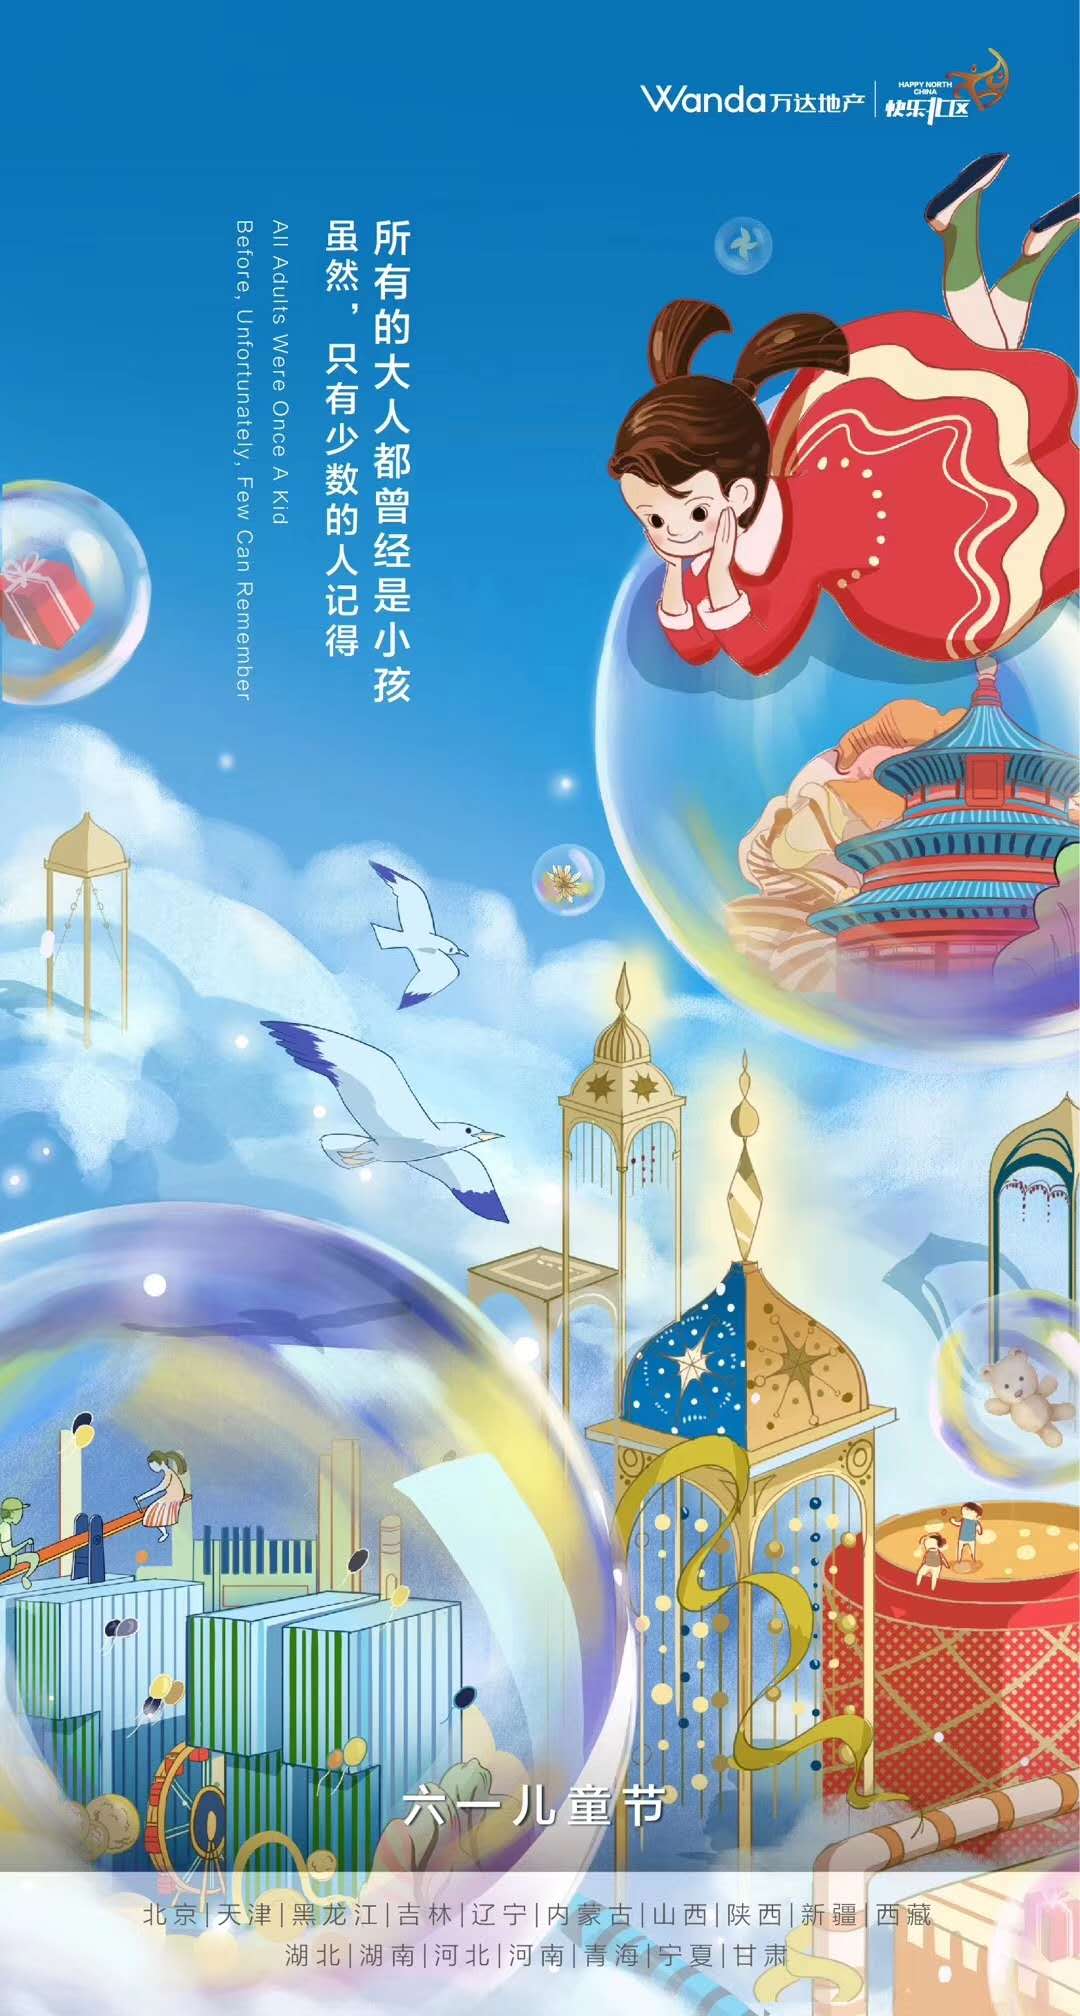 绿白色童心未泯照片儿童节节日宣传中文海报 - 模板 - Canva可画